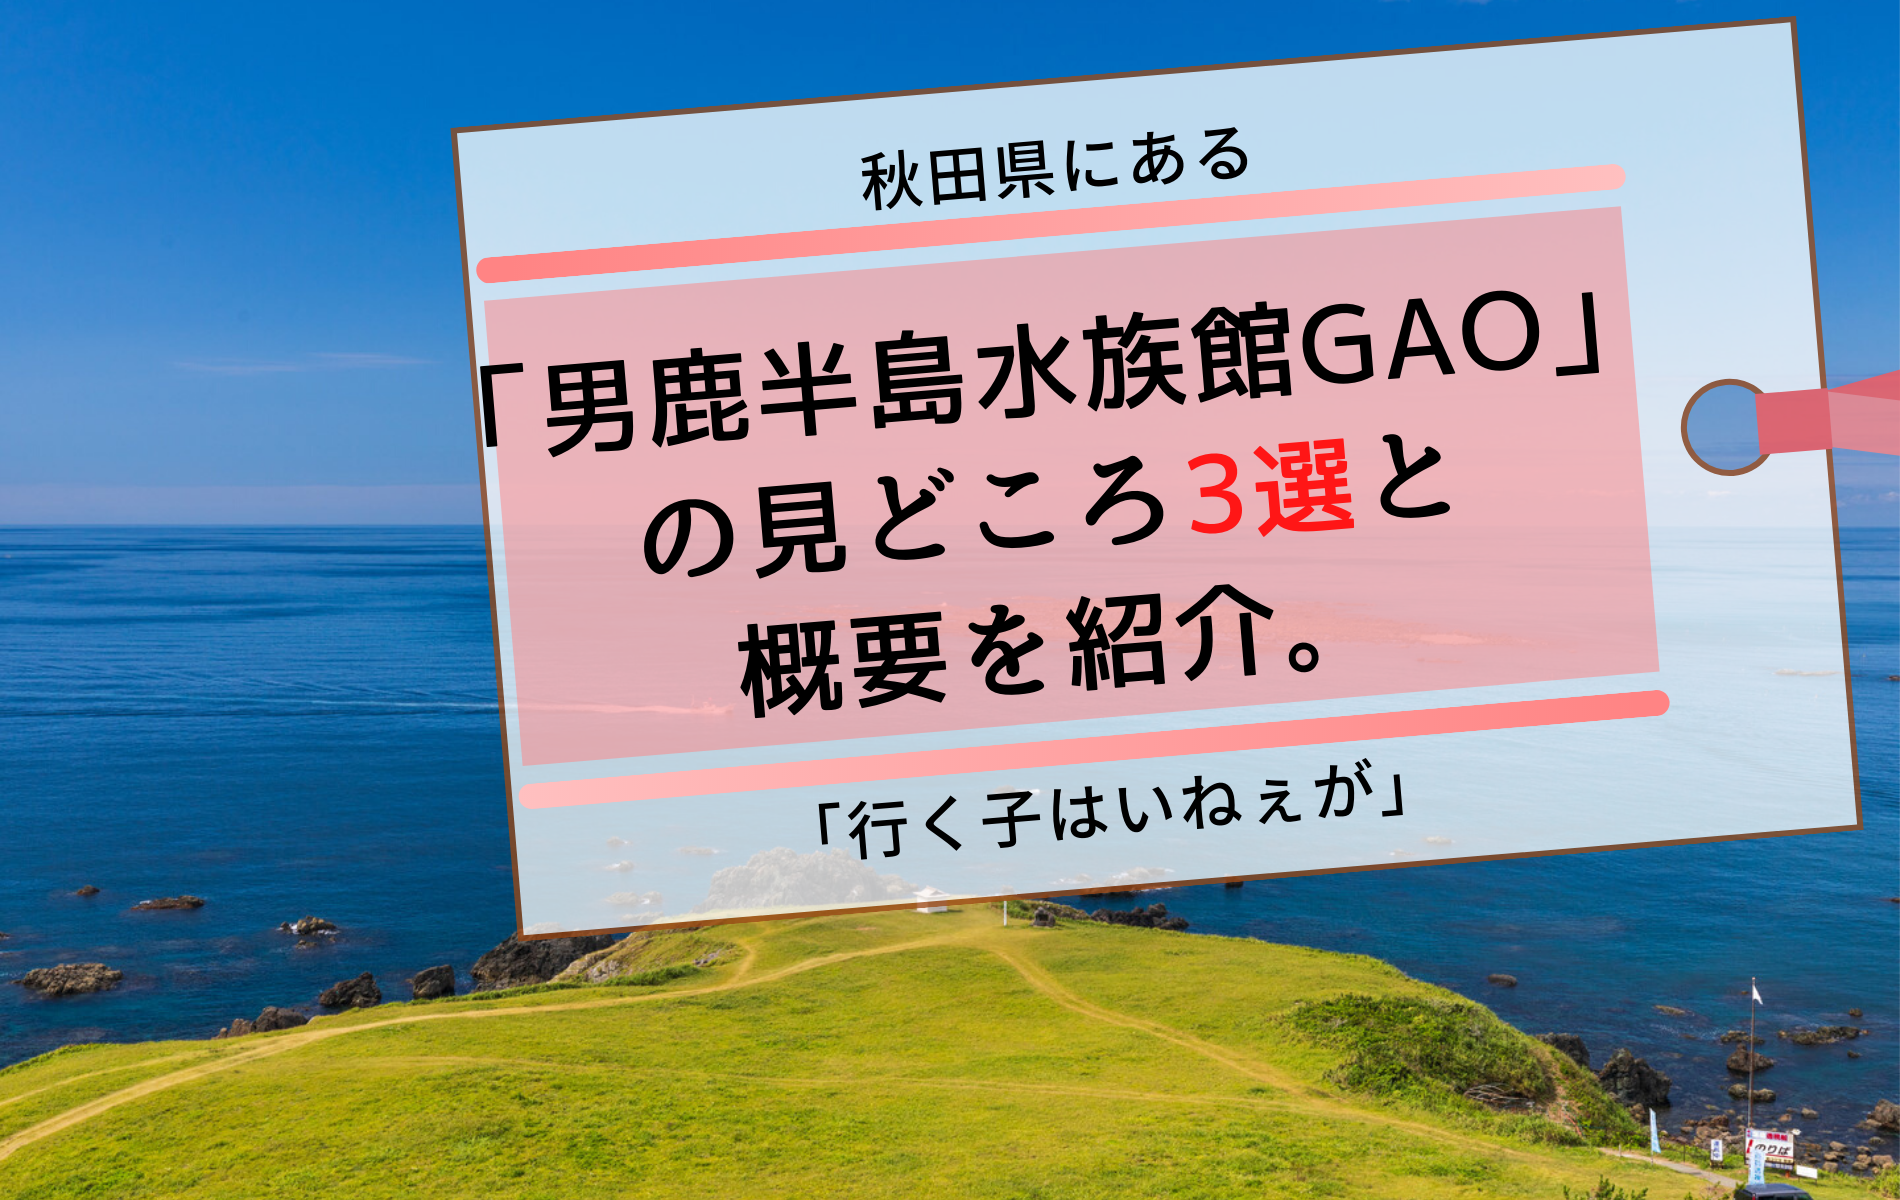 秋田県にある 男鹿半島水族館gao の見どころ3選と概要を紹介 ふぉむすい